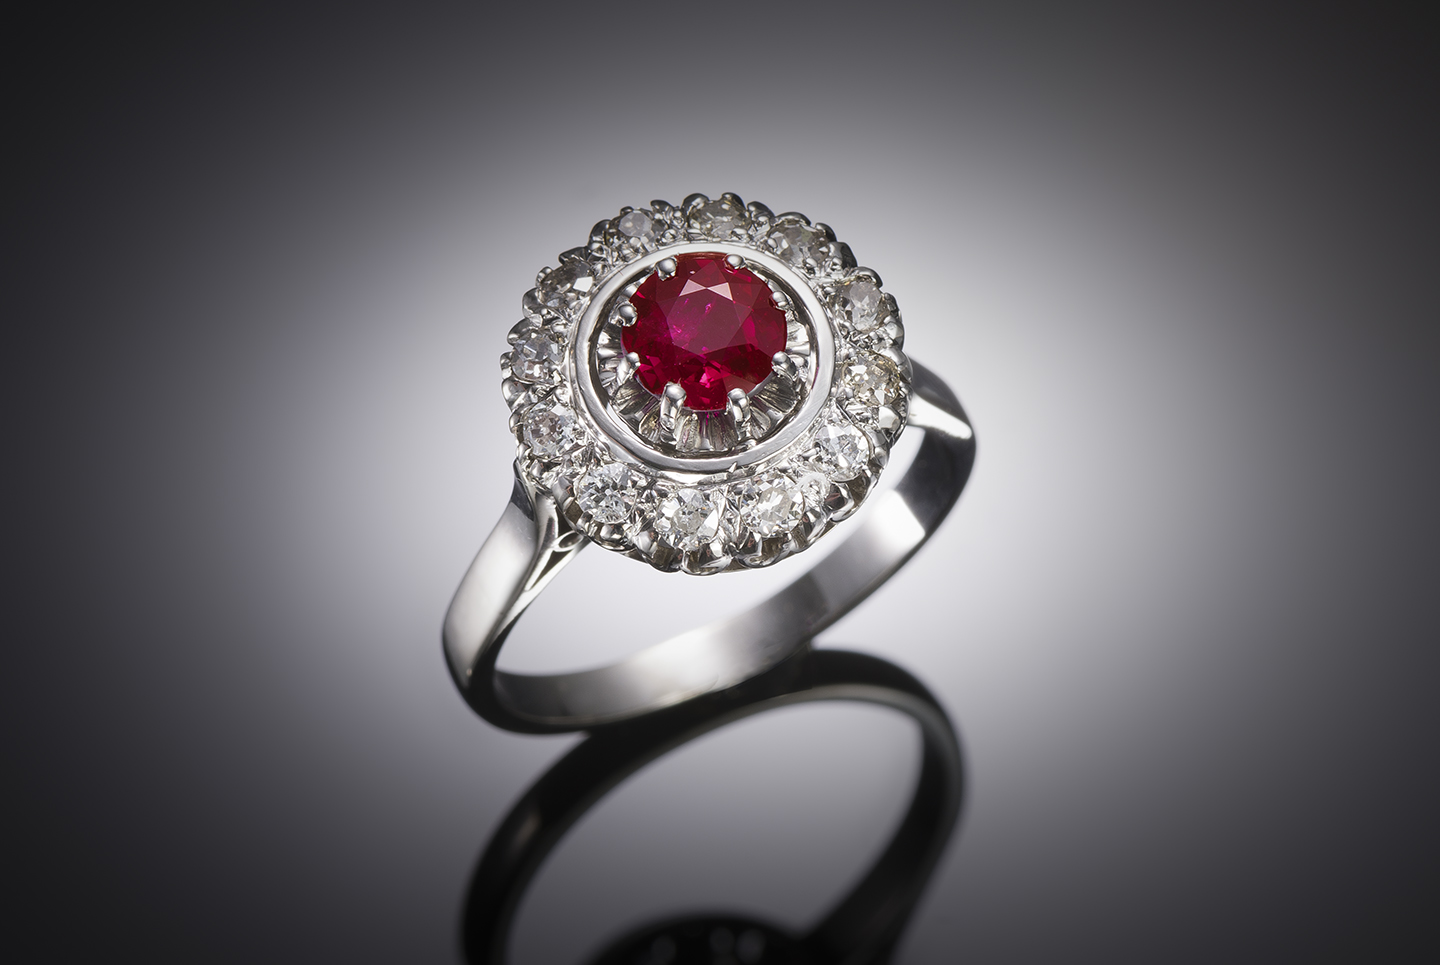 Bague Art déco rubis naturel rouge intense (certificat laboratoire) et diamants taille ancienne. Travail français vers 1935.-1